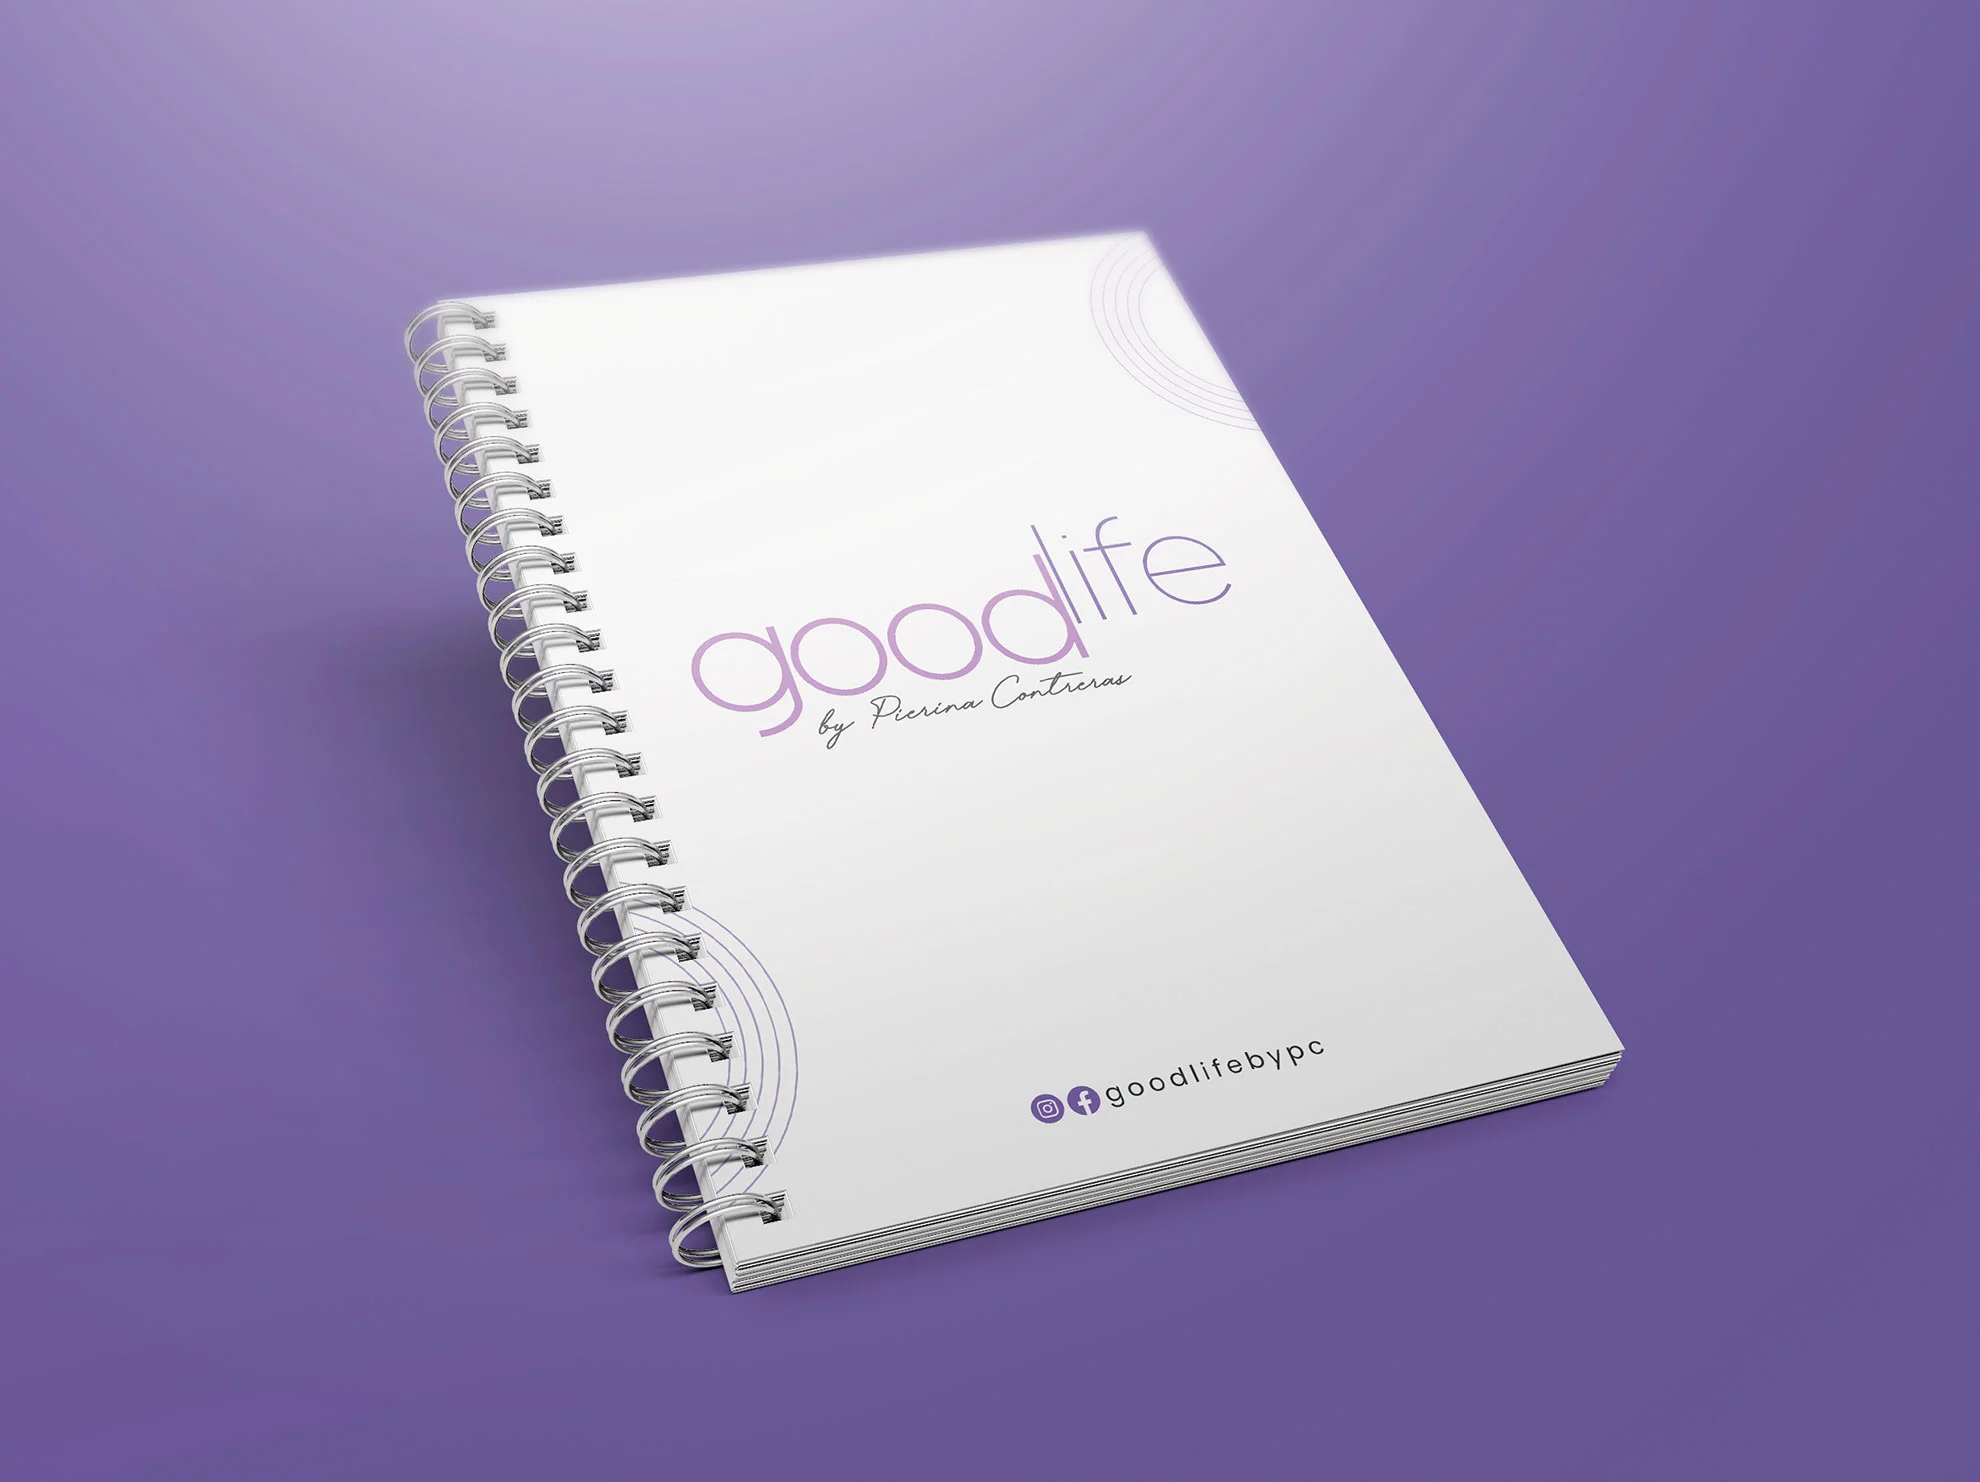 Branding de Good life